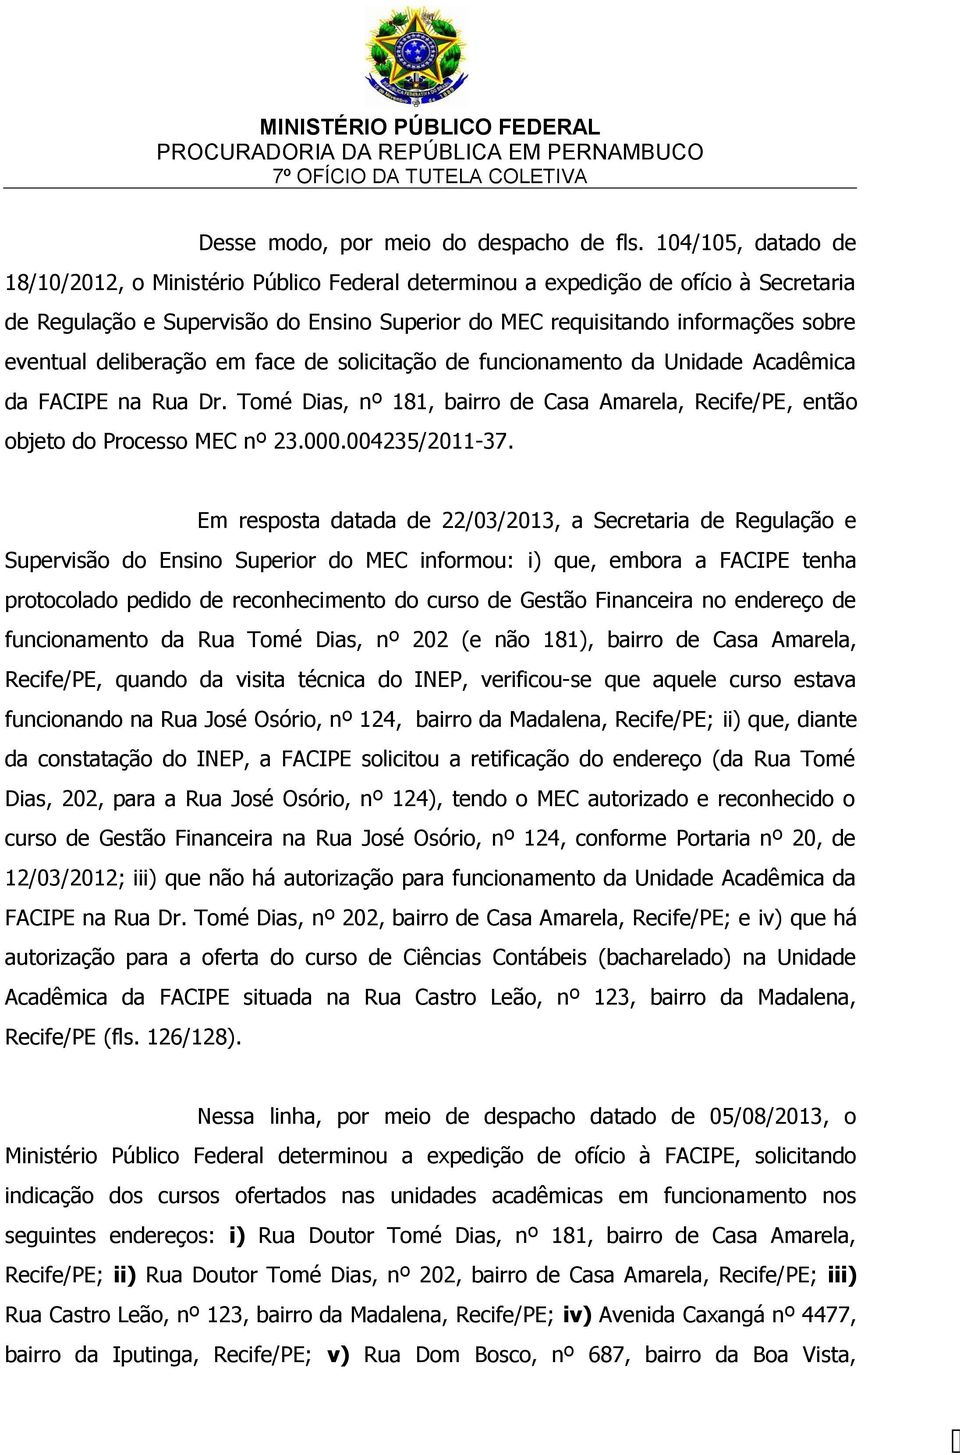 deliberação em face de solicitação de funcionamento da Unidade Acadêmica da FACIPE na Rua Dr. Tomé Dias, nº 181, bairro de Casa Amarela, Recife/PE, então objeto do Processo MEC nº 23.000.